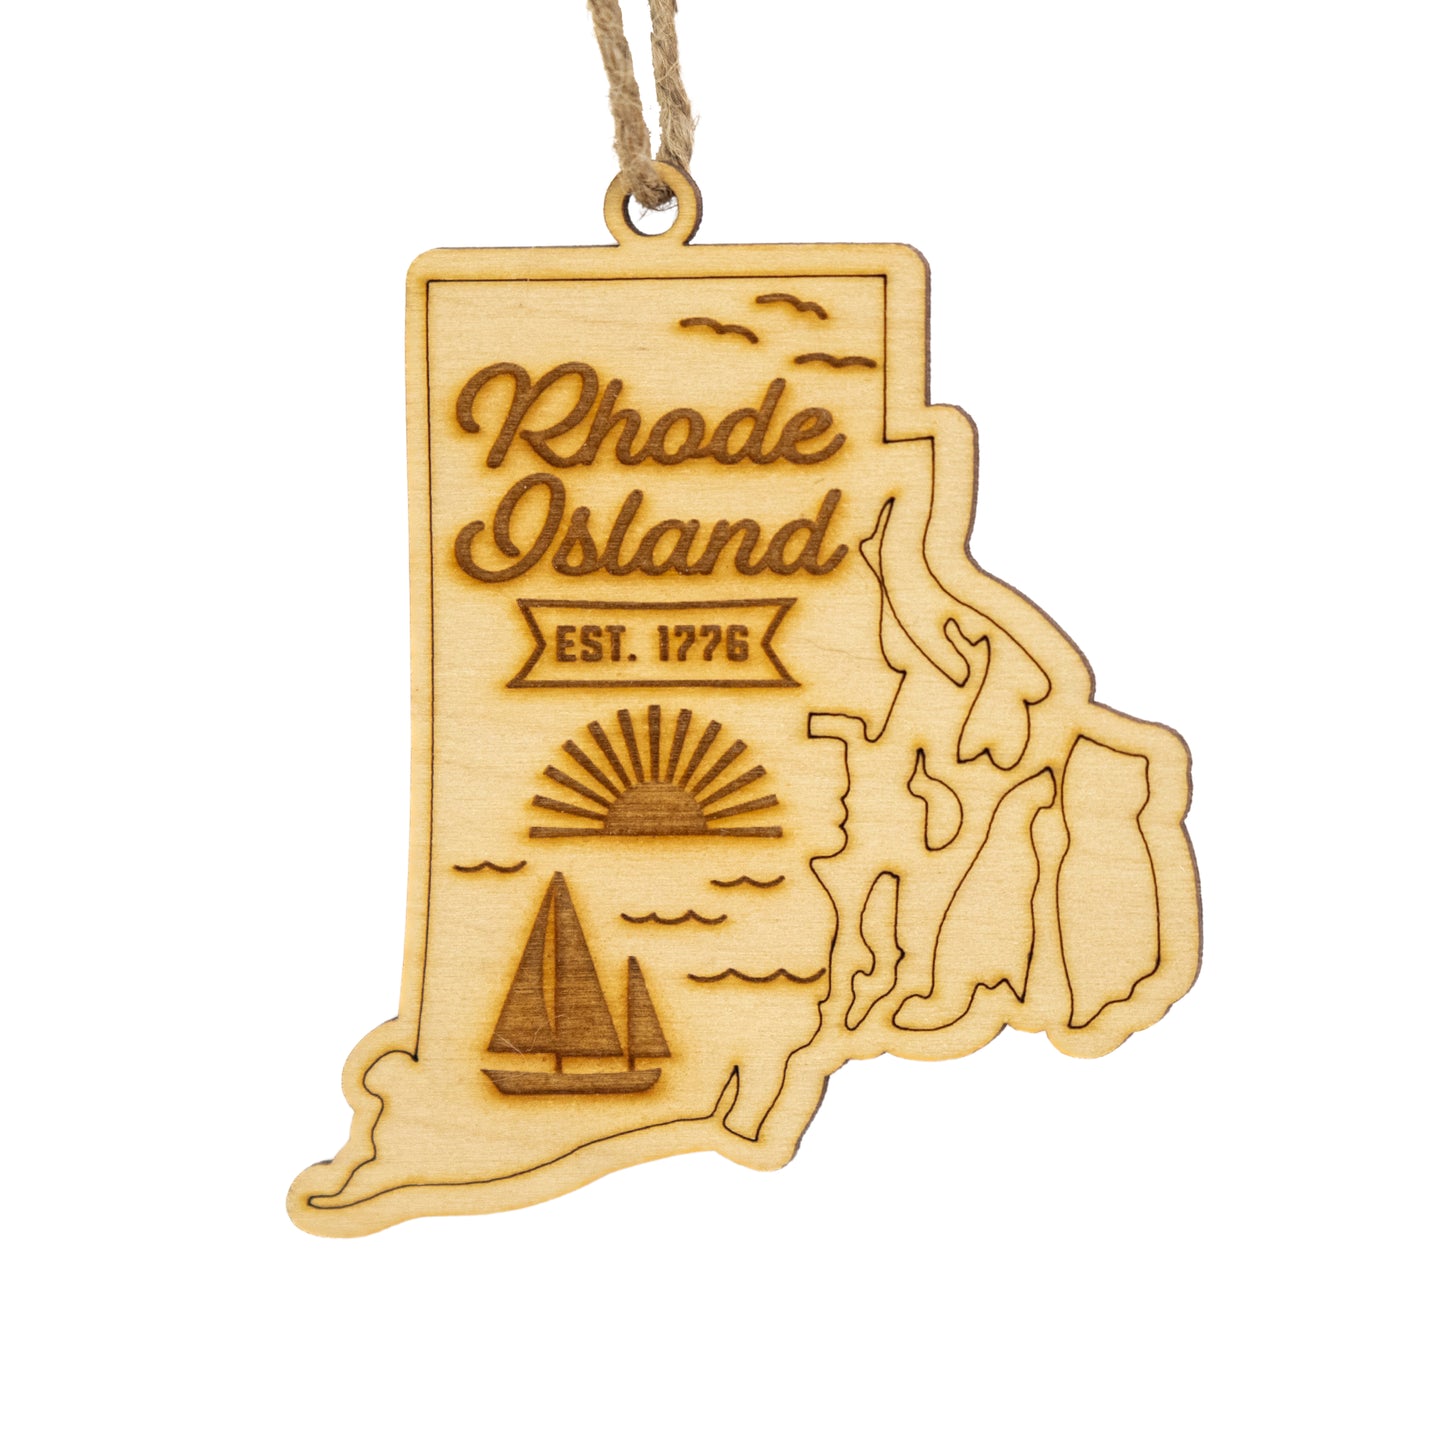 Rhode Island Home Town Ornament